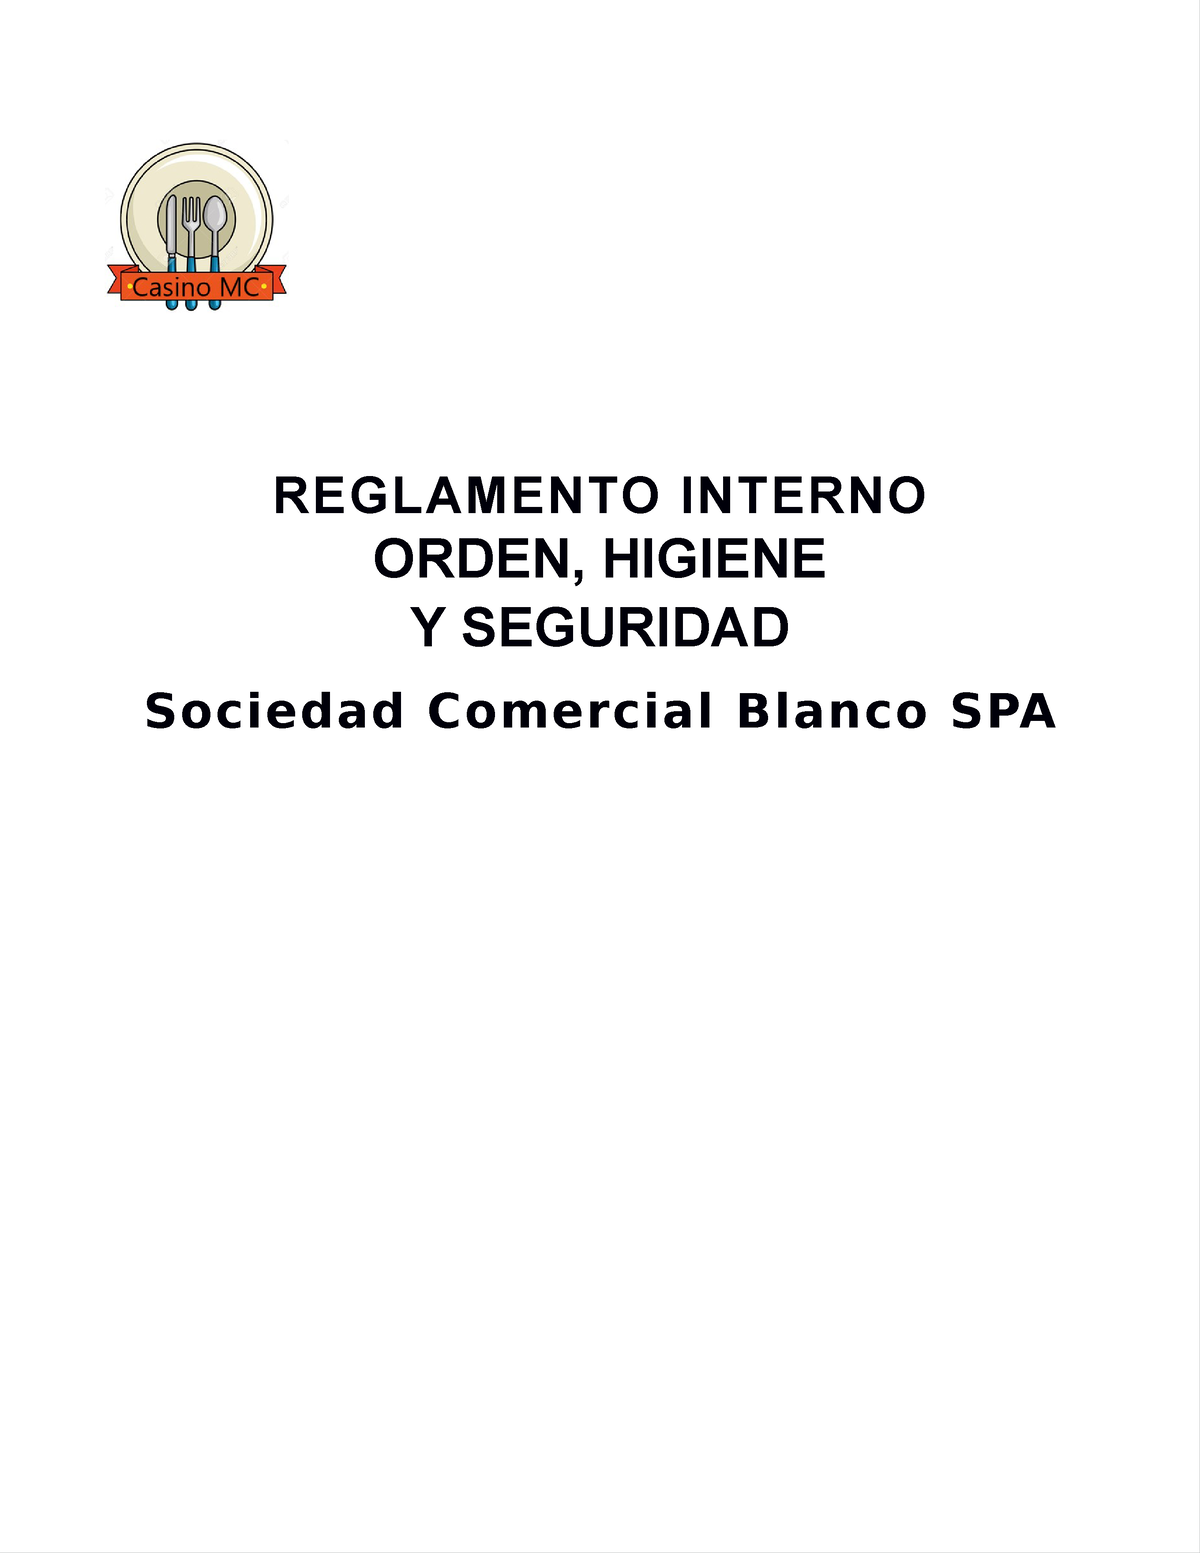 Reglamento De Orden Higiene Y Seguridad Reglamento Interno Orden Higiene Y Seguridad Sociedad 9016